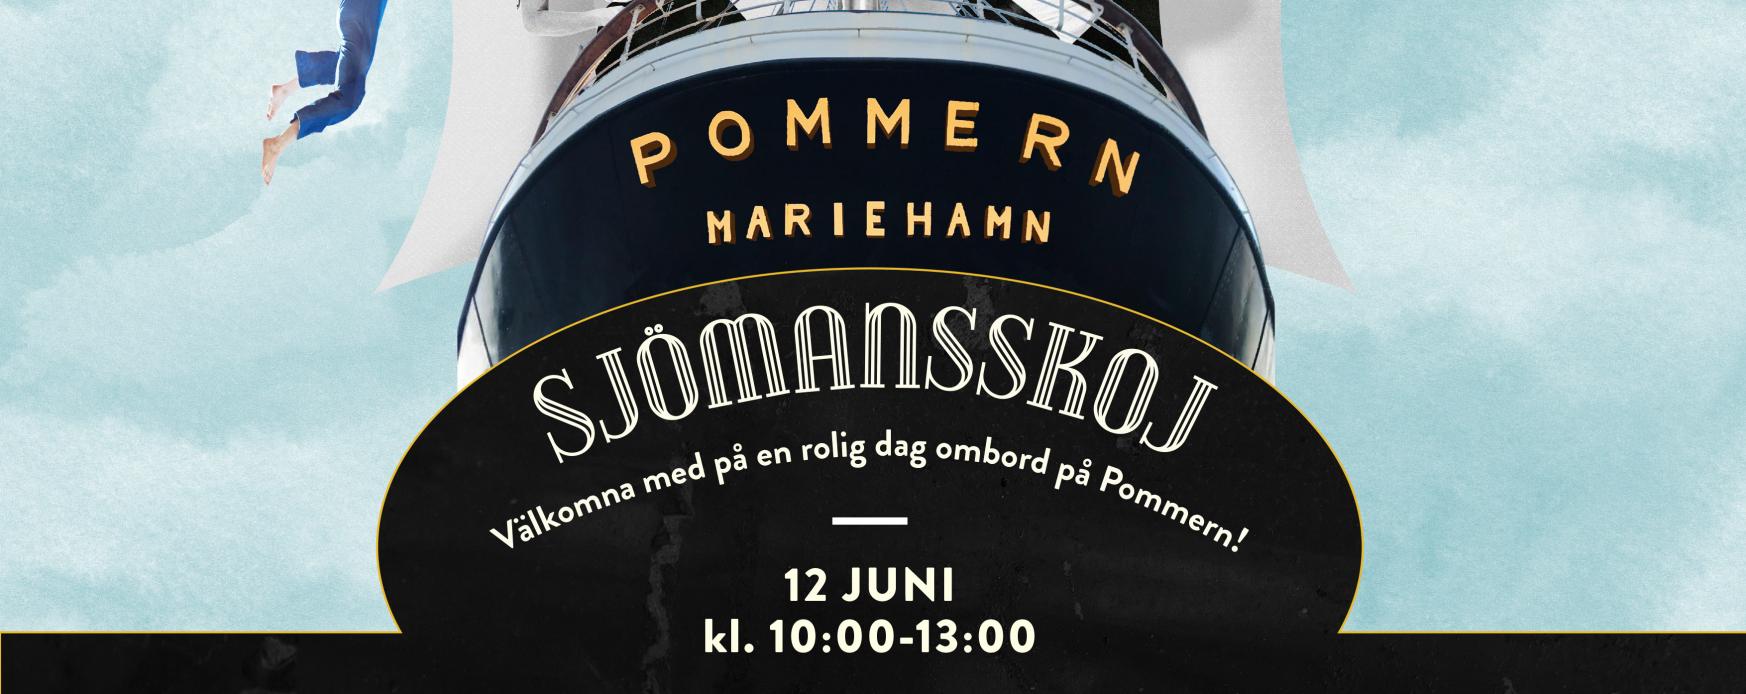 Affisch för sjömansskoj för skolbarn ombord på segelfartyget Pommern.